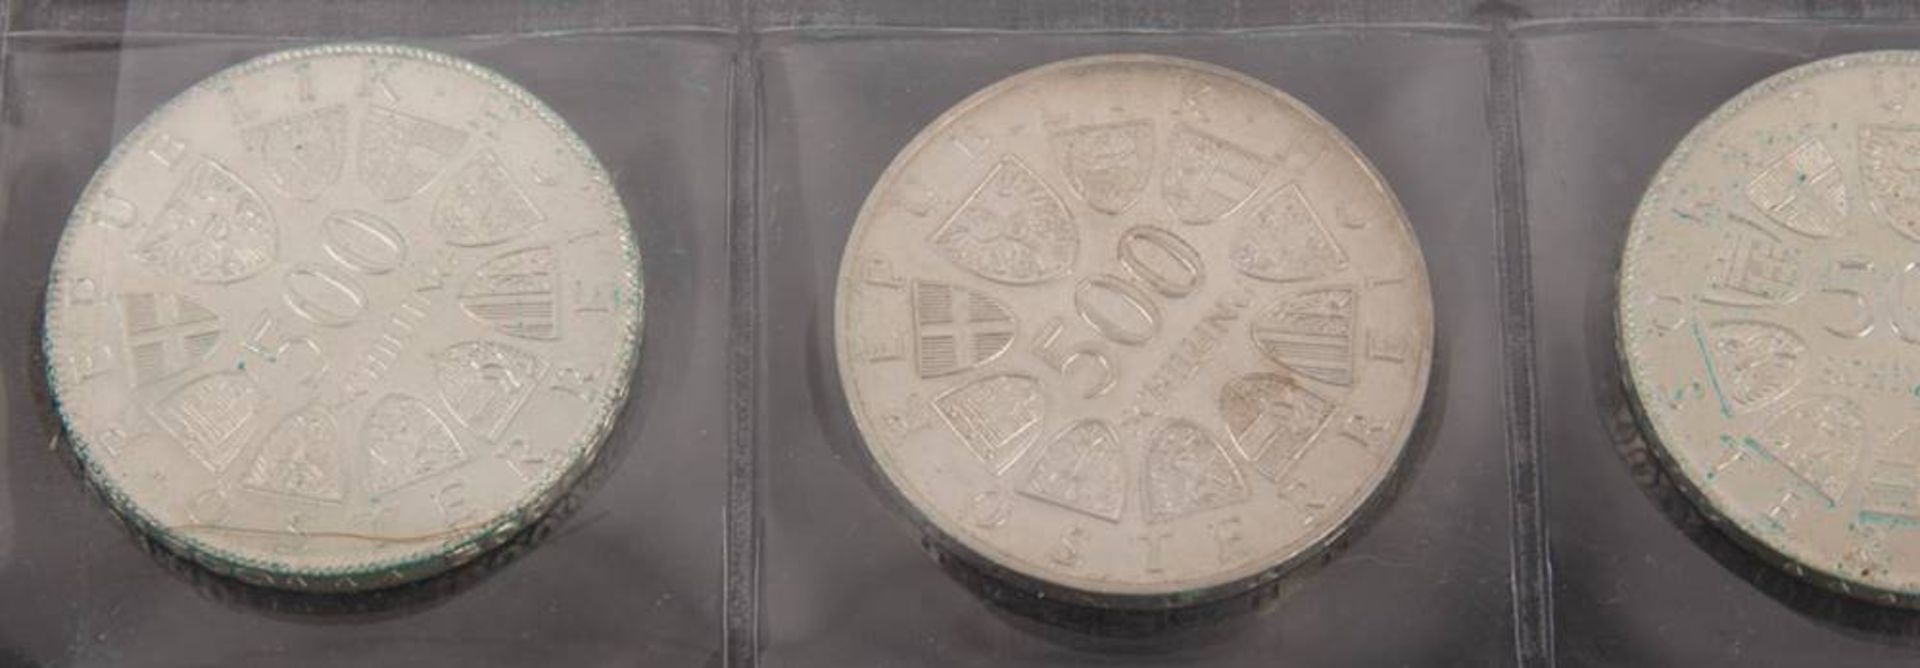 Österreich: Silbermünzen 2. Republik 12x500 ATS. - Bild 4 aus 5